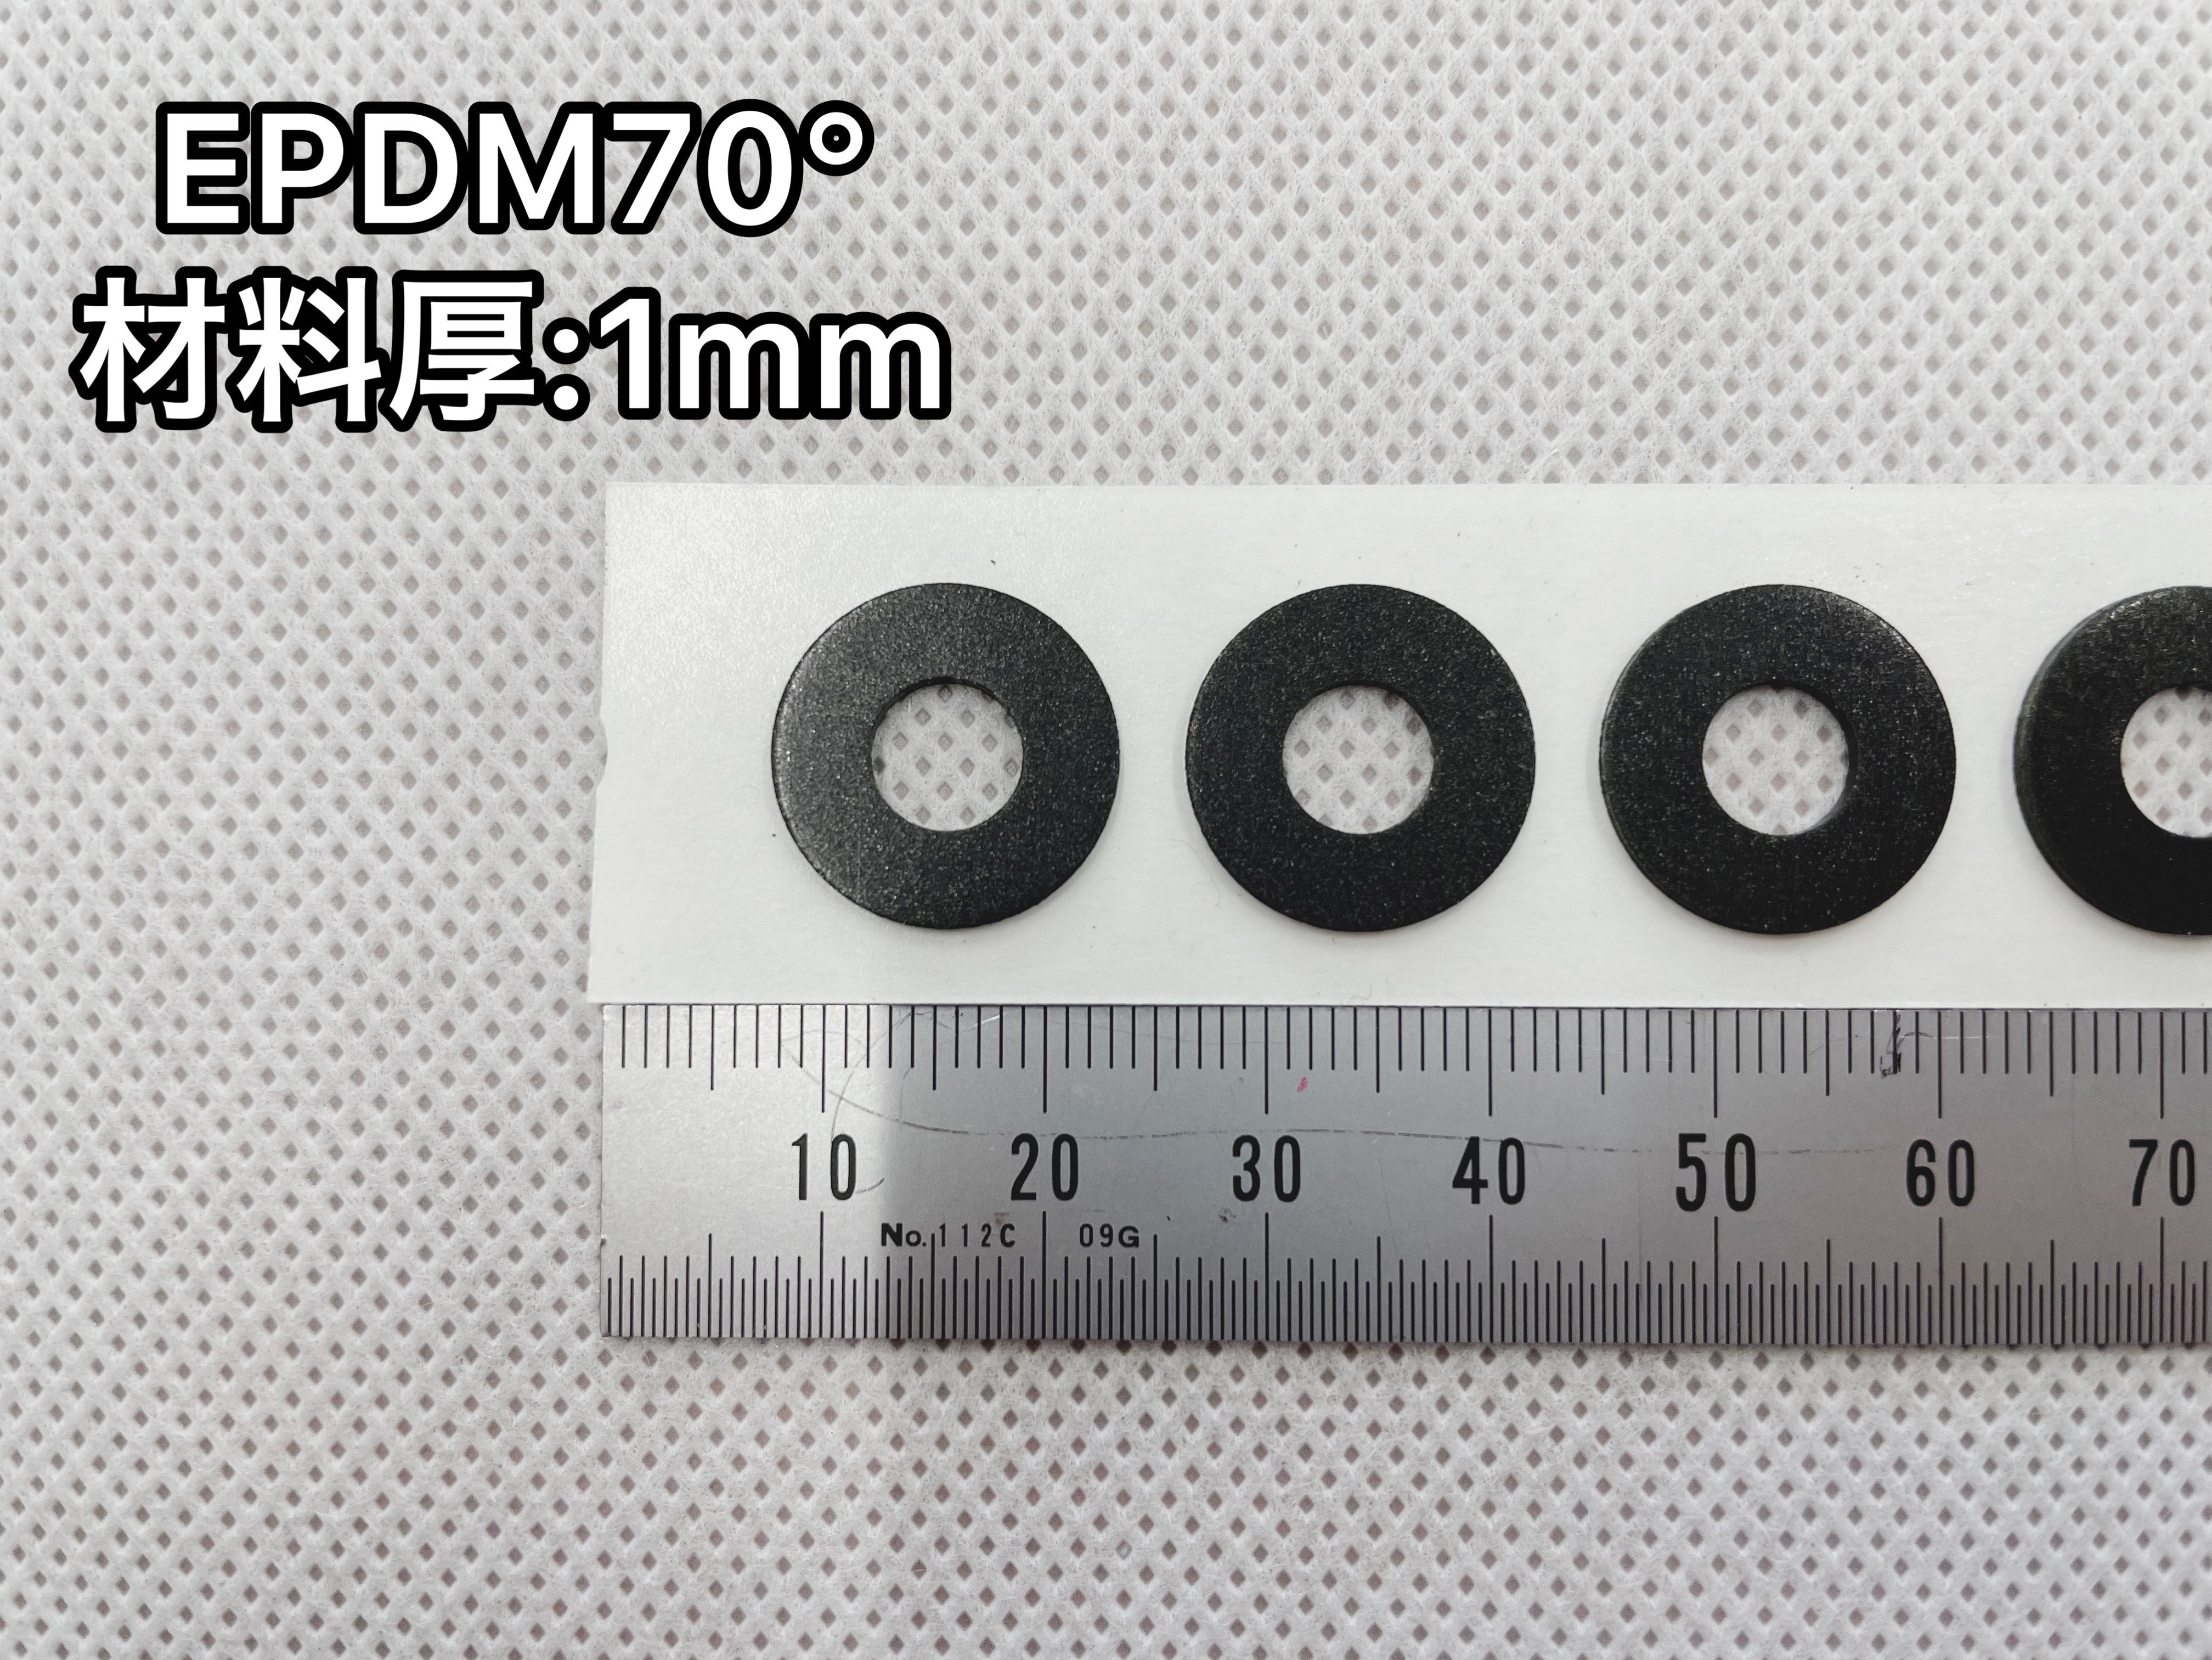 No.459　EPDM70°[EB270B]　1mm厚